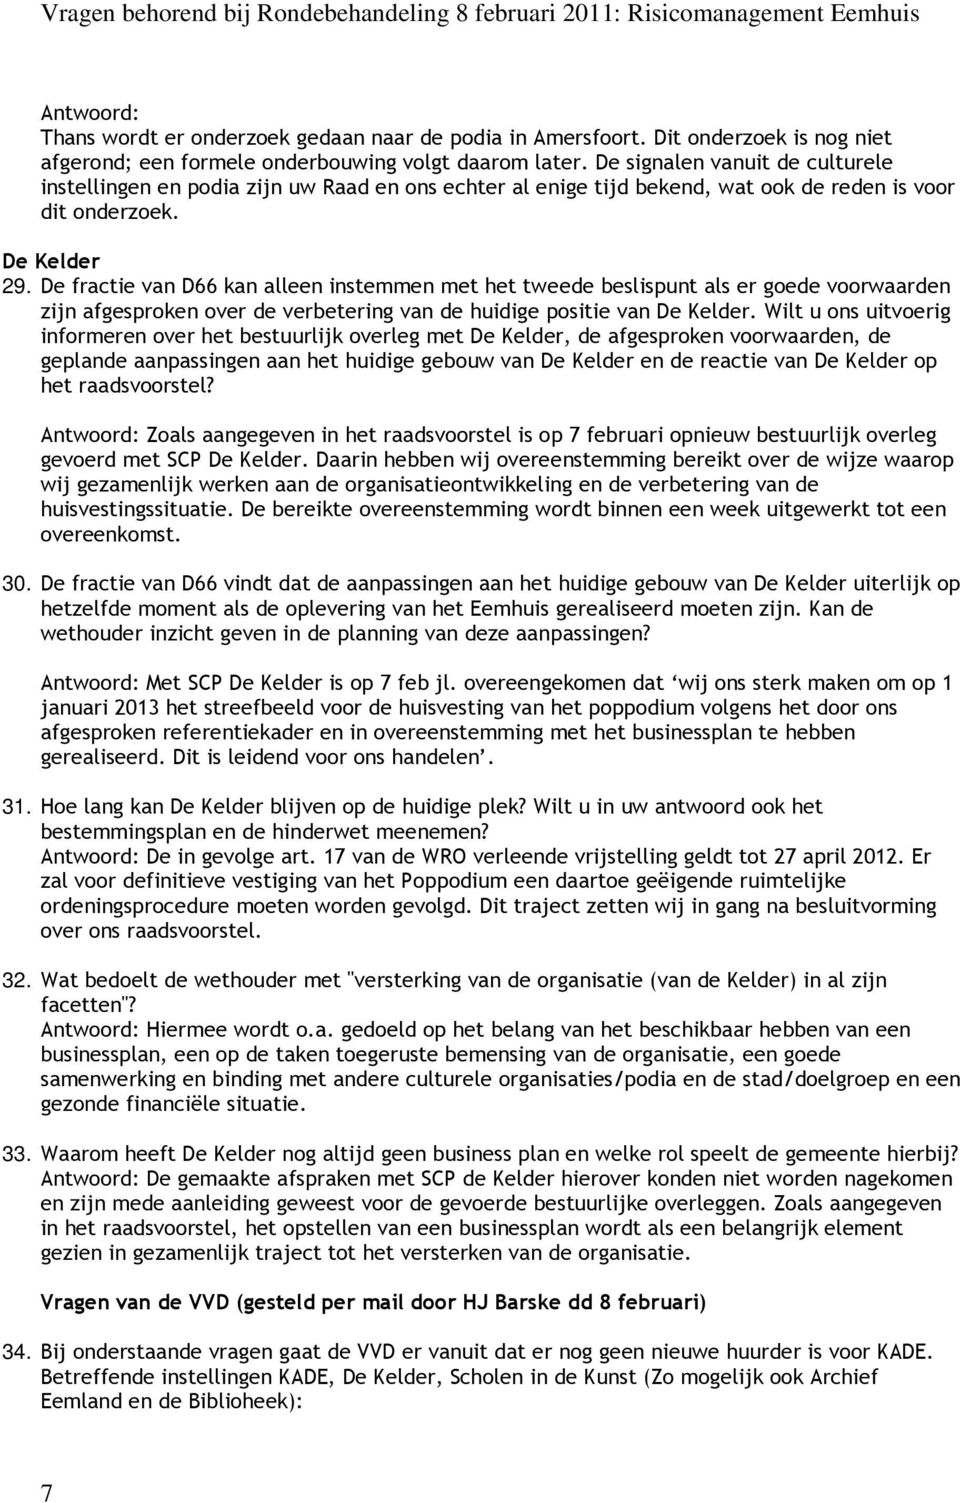 De fractie van D66 kan alleen instemmen met het tweede beslispunt als er goede voorwaarden zijn afgesproken over de verbetering van de huidige positie van De Kelder.